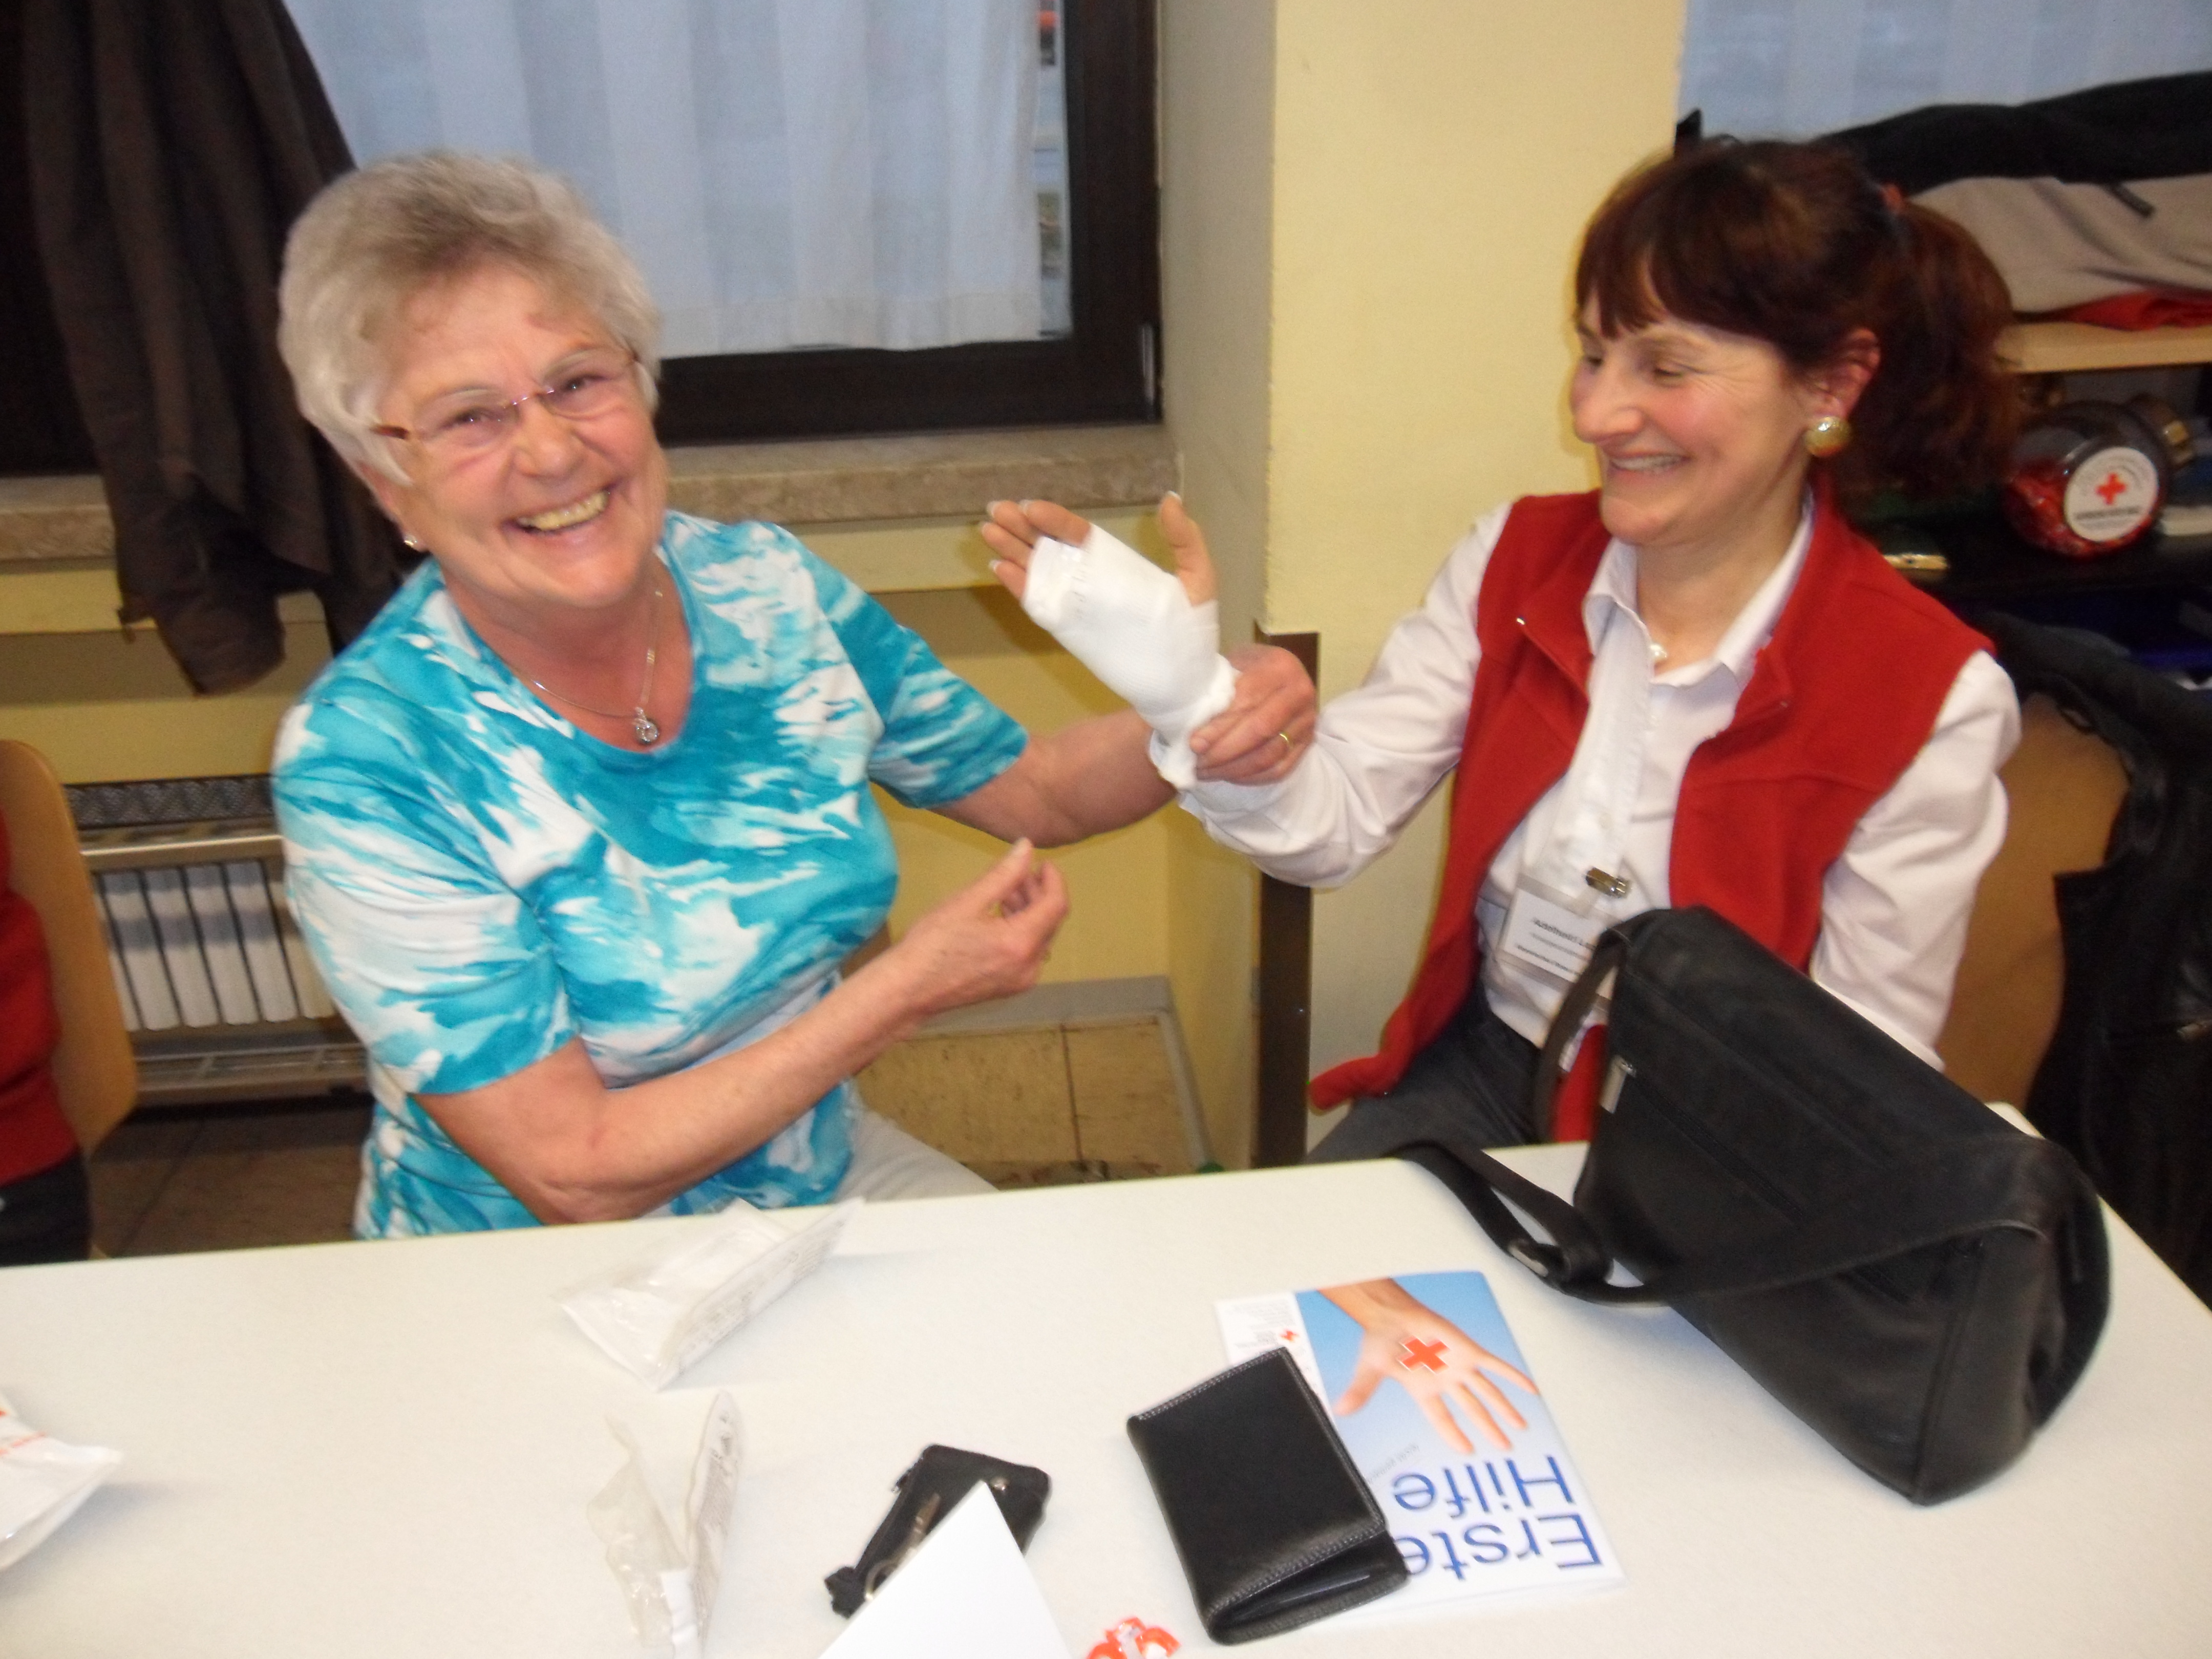 Bild zeigt zwei Teilnehmer eines Erste Hilfe Kurses beim Verbinden des Armes